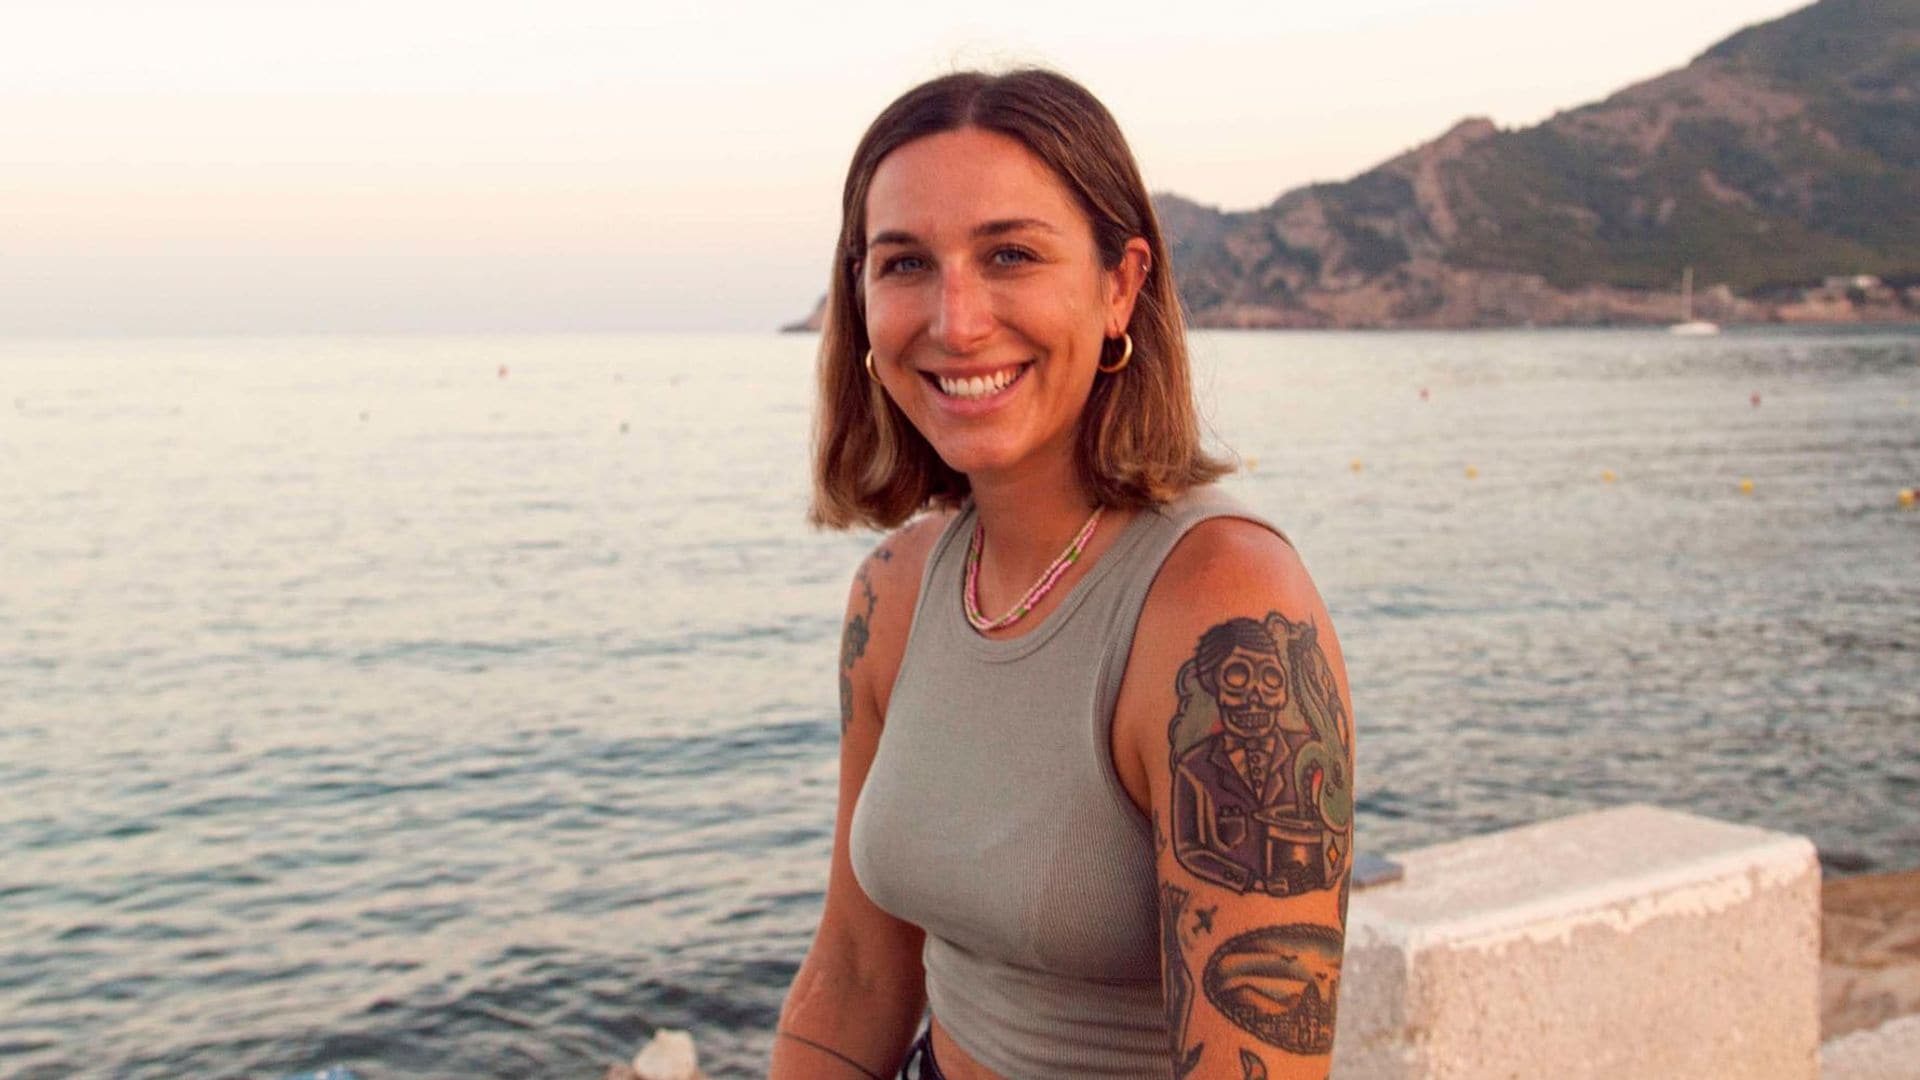 Descubrimos a Cristina Lazarraga, la ‘jefa’ española de los deportes de motor acuáticos y piloto ‘estrella’ de Rafa Nadal